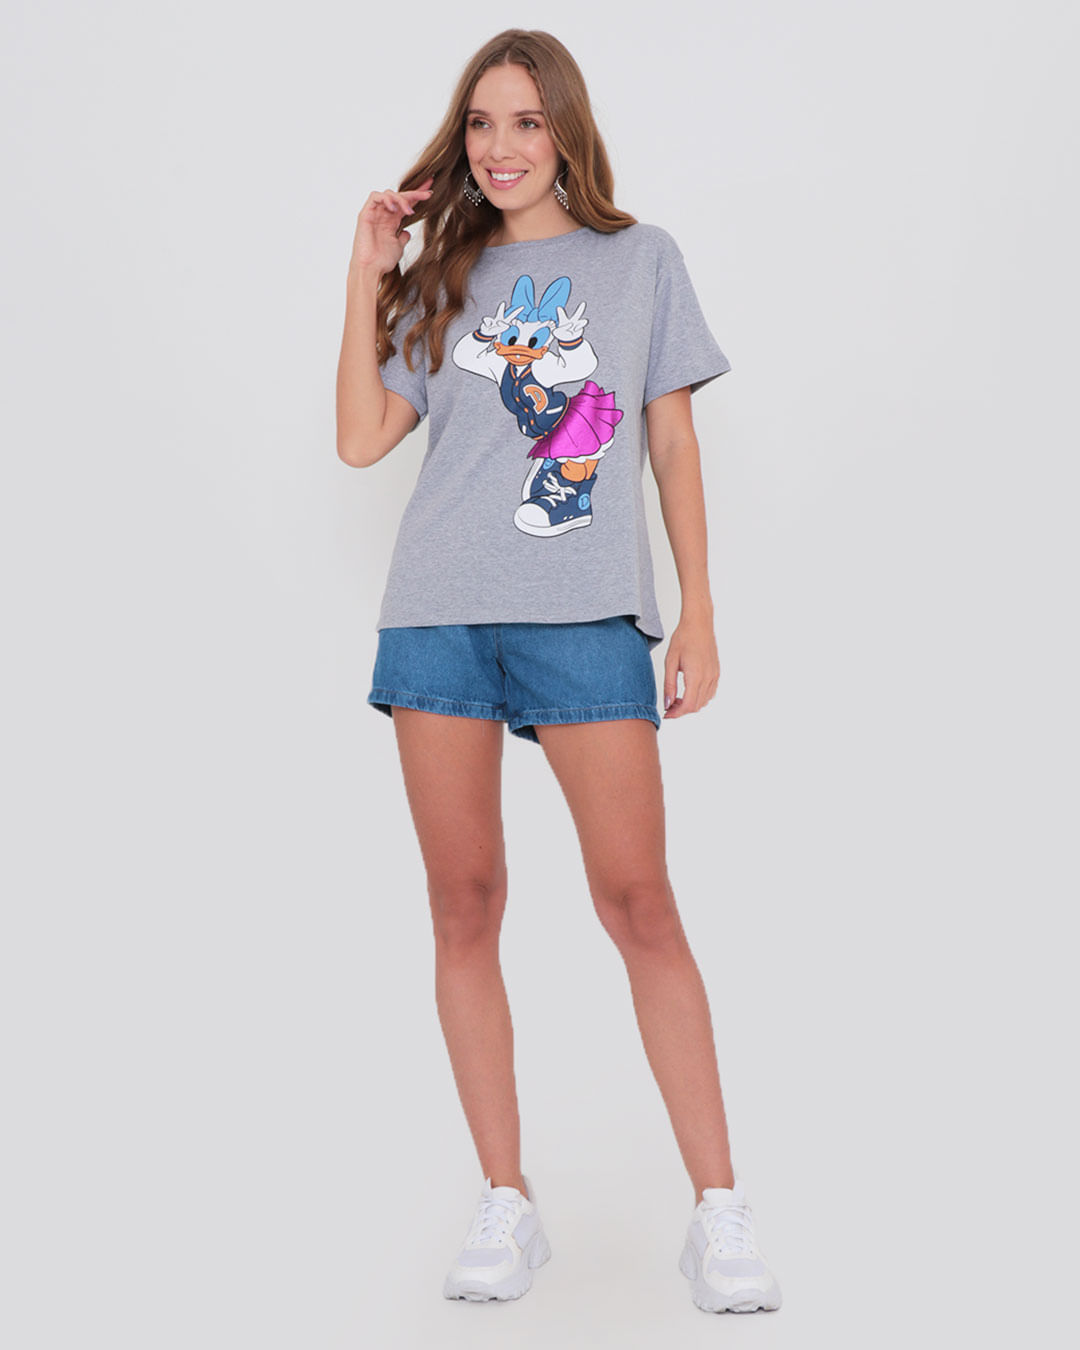 Camiseta-Estampa-Margarida-Disney-Mescla-Cinza